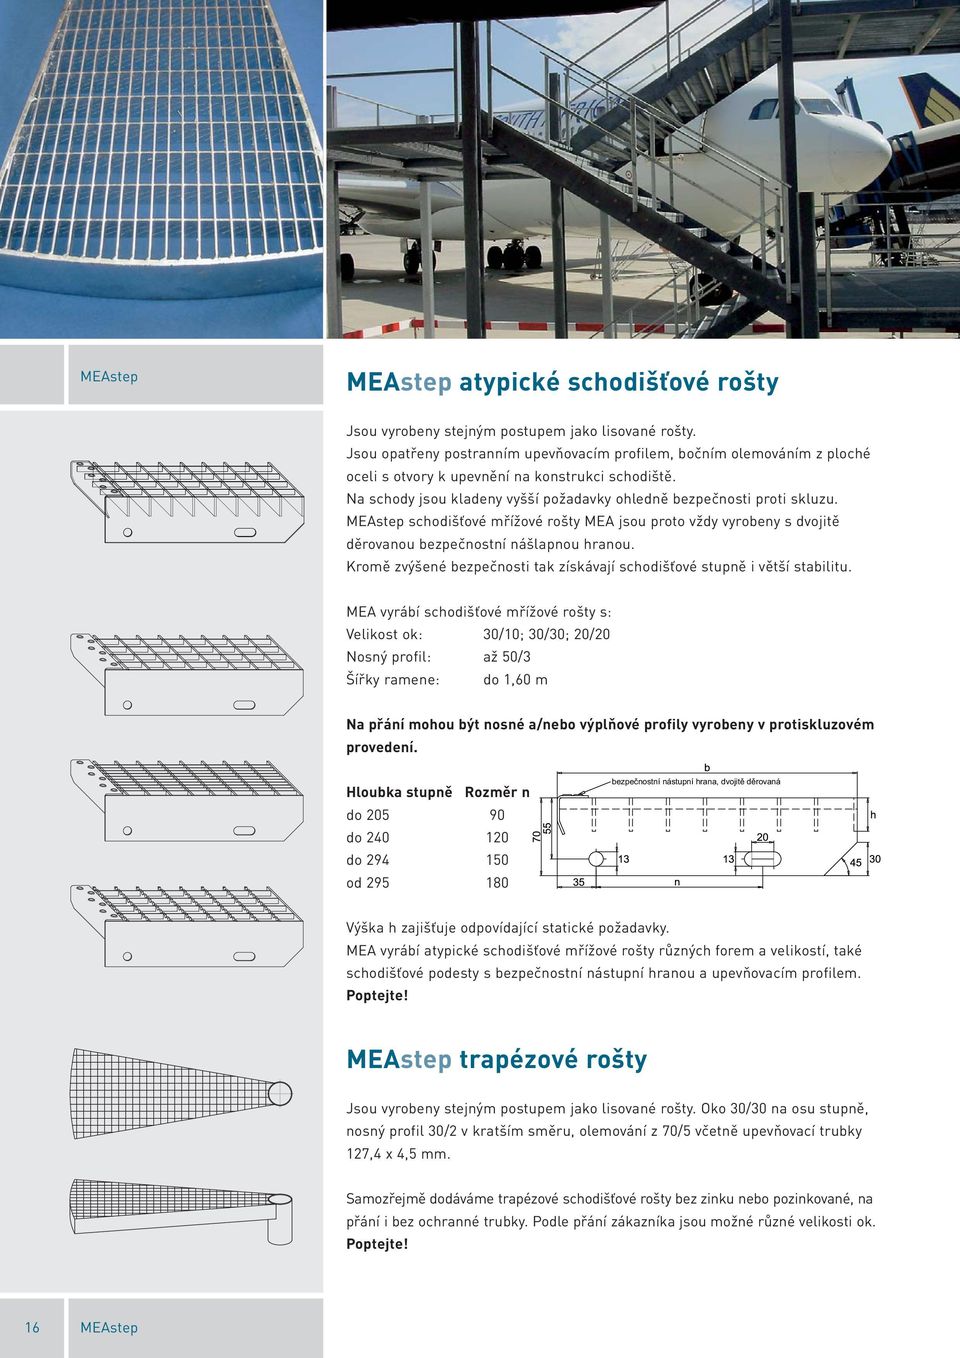 MEAstep schodišťové mřížové rošty MEA jsou proto vždy vyrobeny s dvojitě děrovanou bezpečnostní nášlapnou hranou. Kromě zvýšené bezpečnosti tak získávají schodišťové stupně i větší stabilitu.